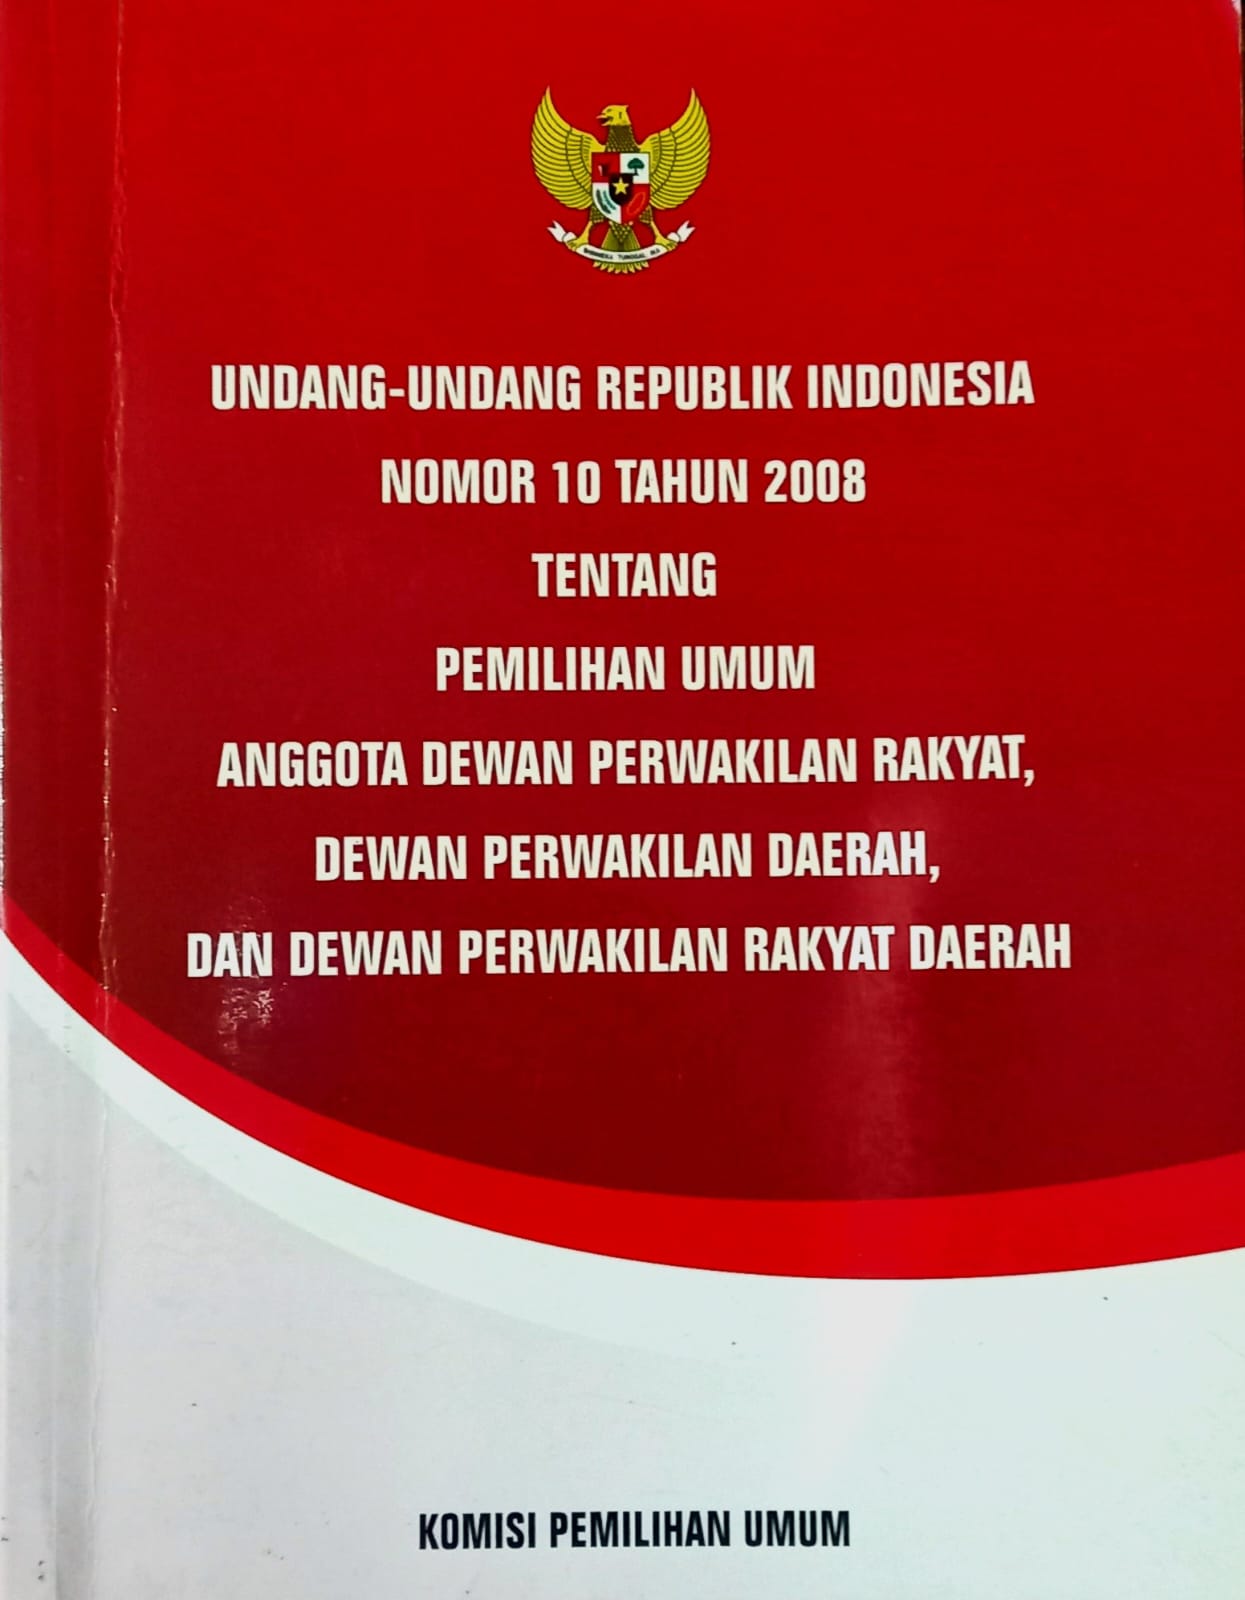 UNDANG UNDANG REPUBLIK INDONESIA NOMOR 10 TAHUN 2008